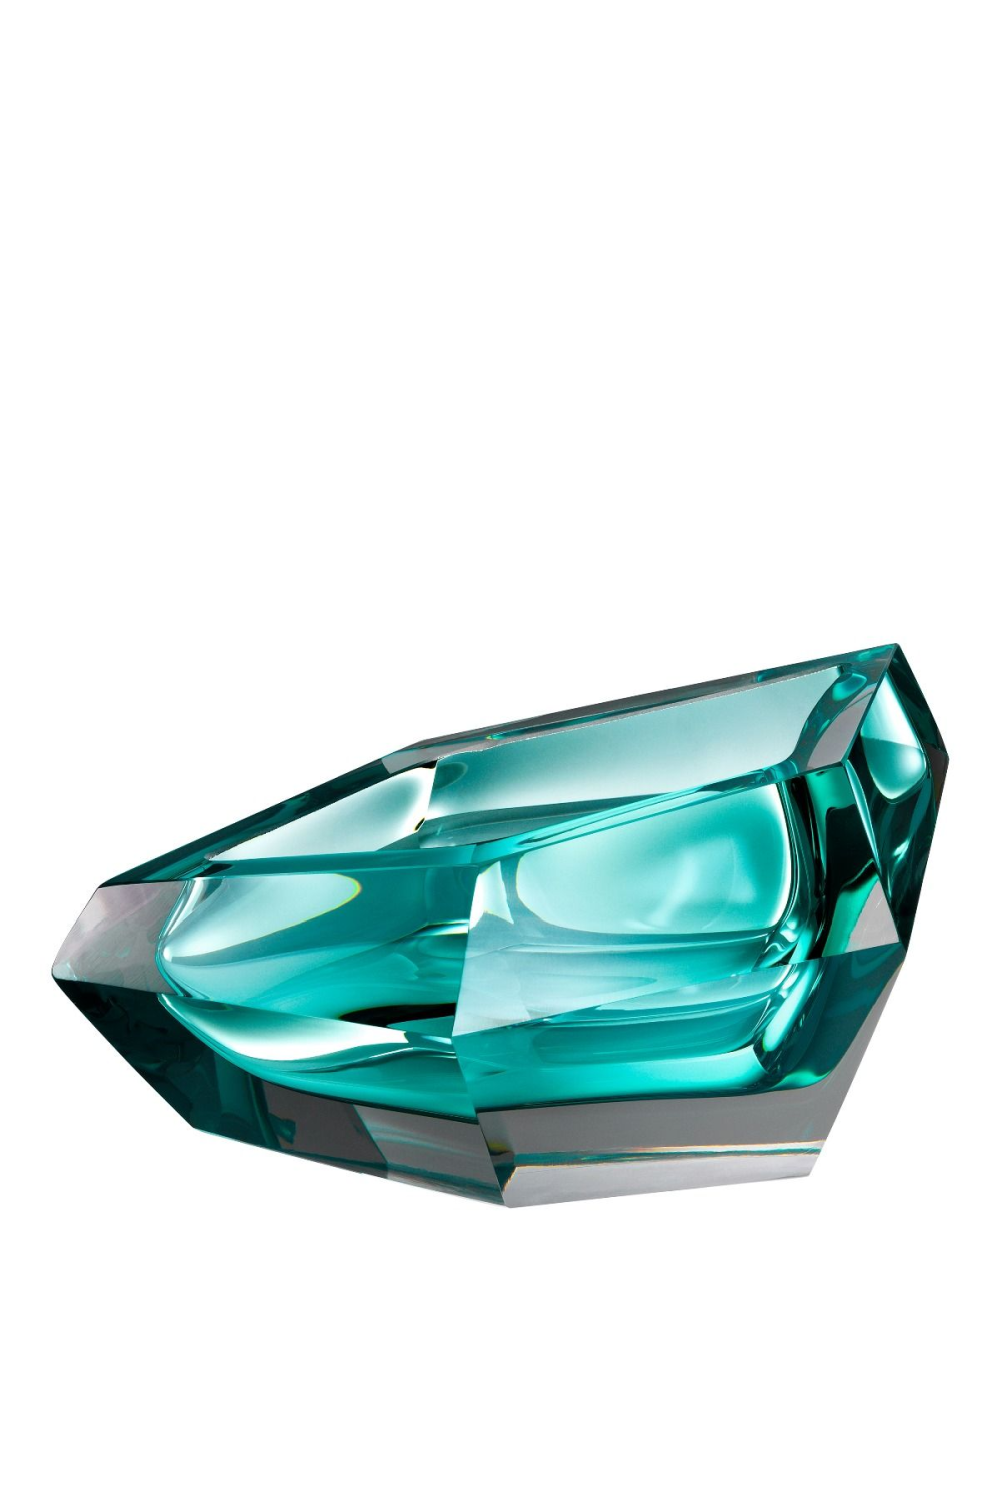 Turquoise Crystal Glass Bowl | Eichholtz Alma | OROA